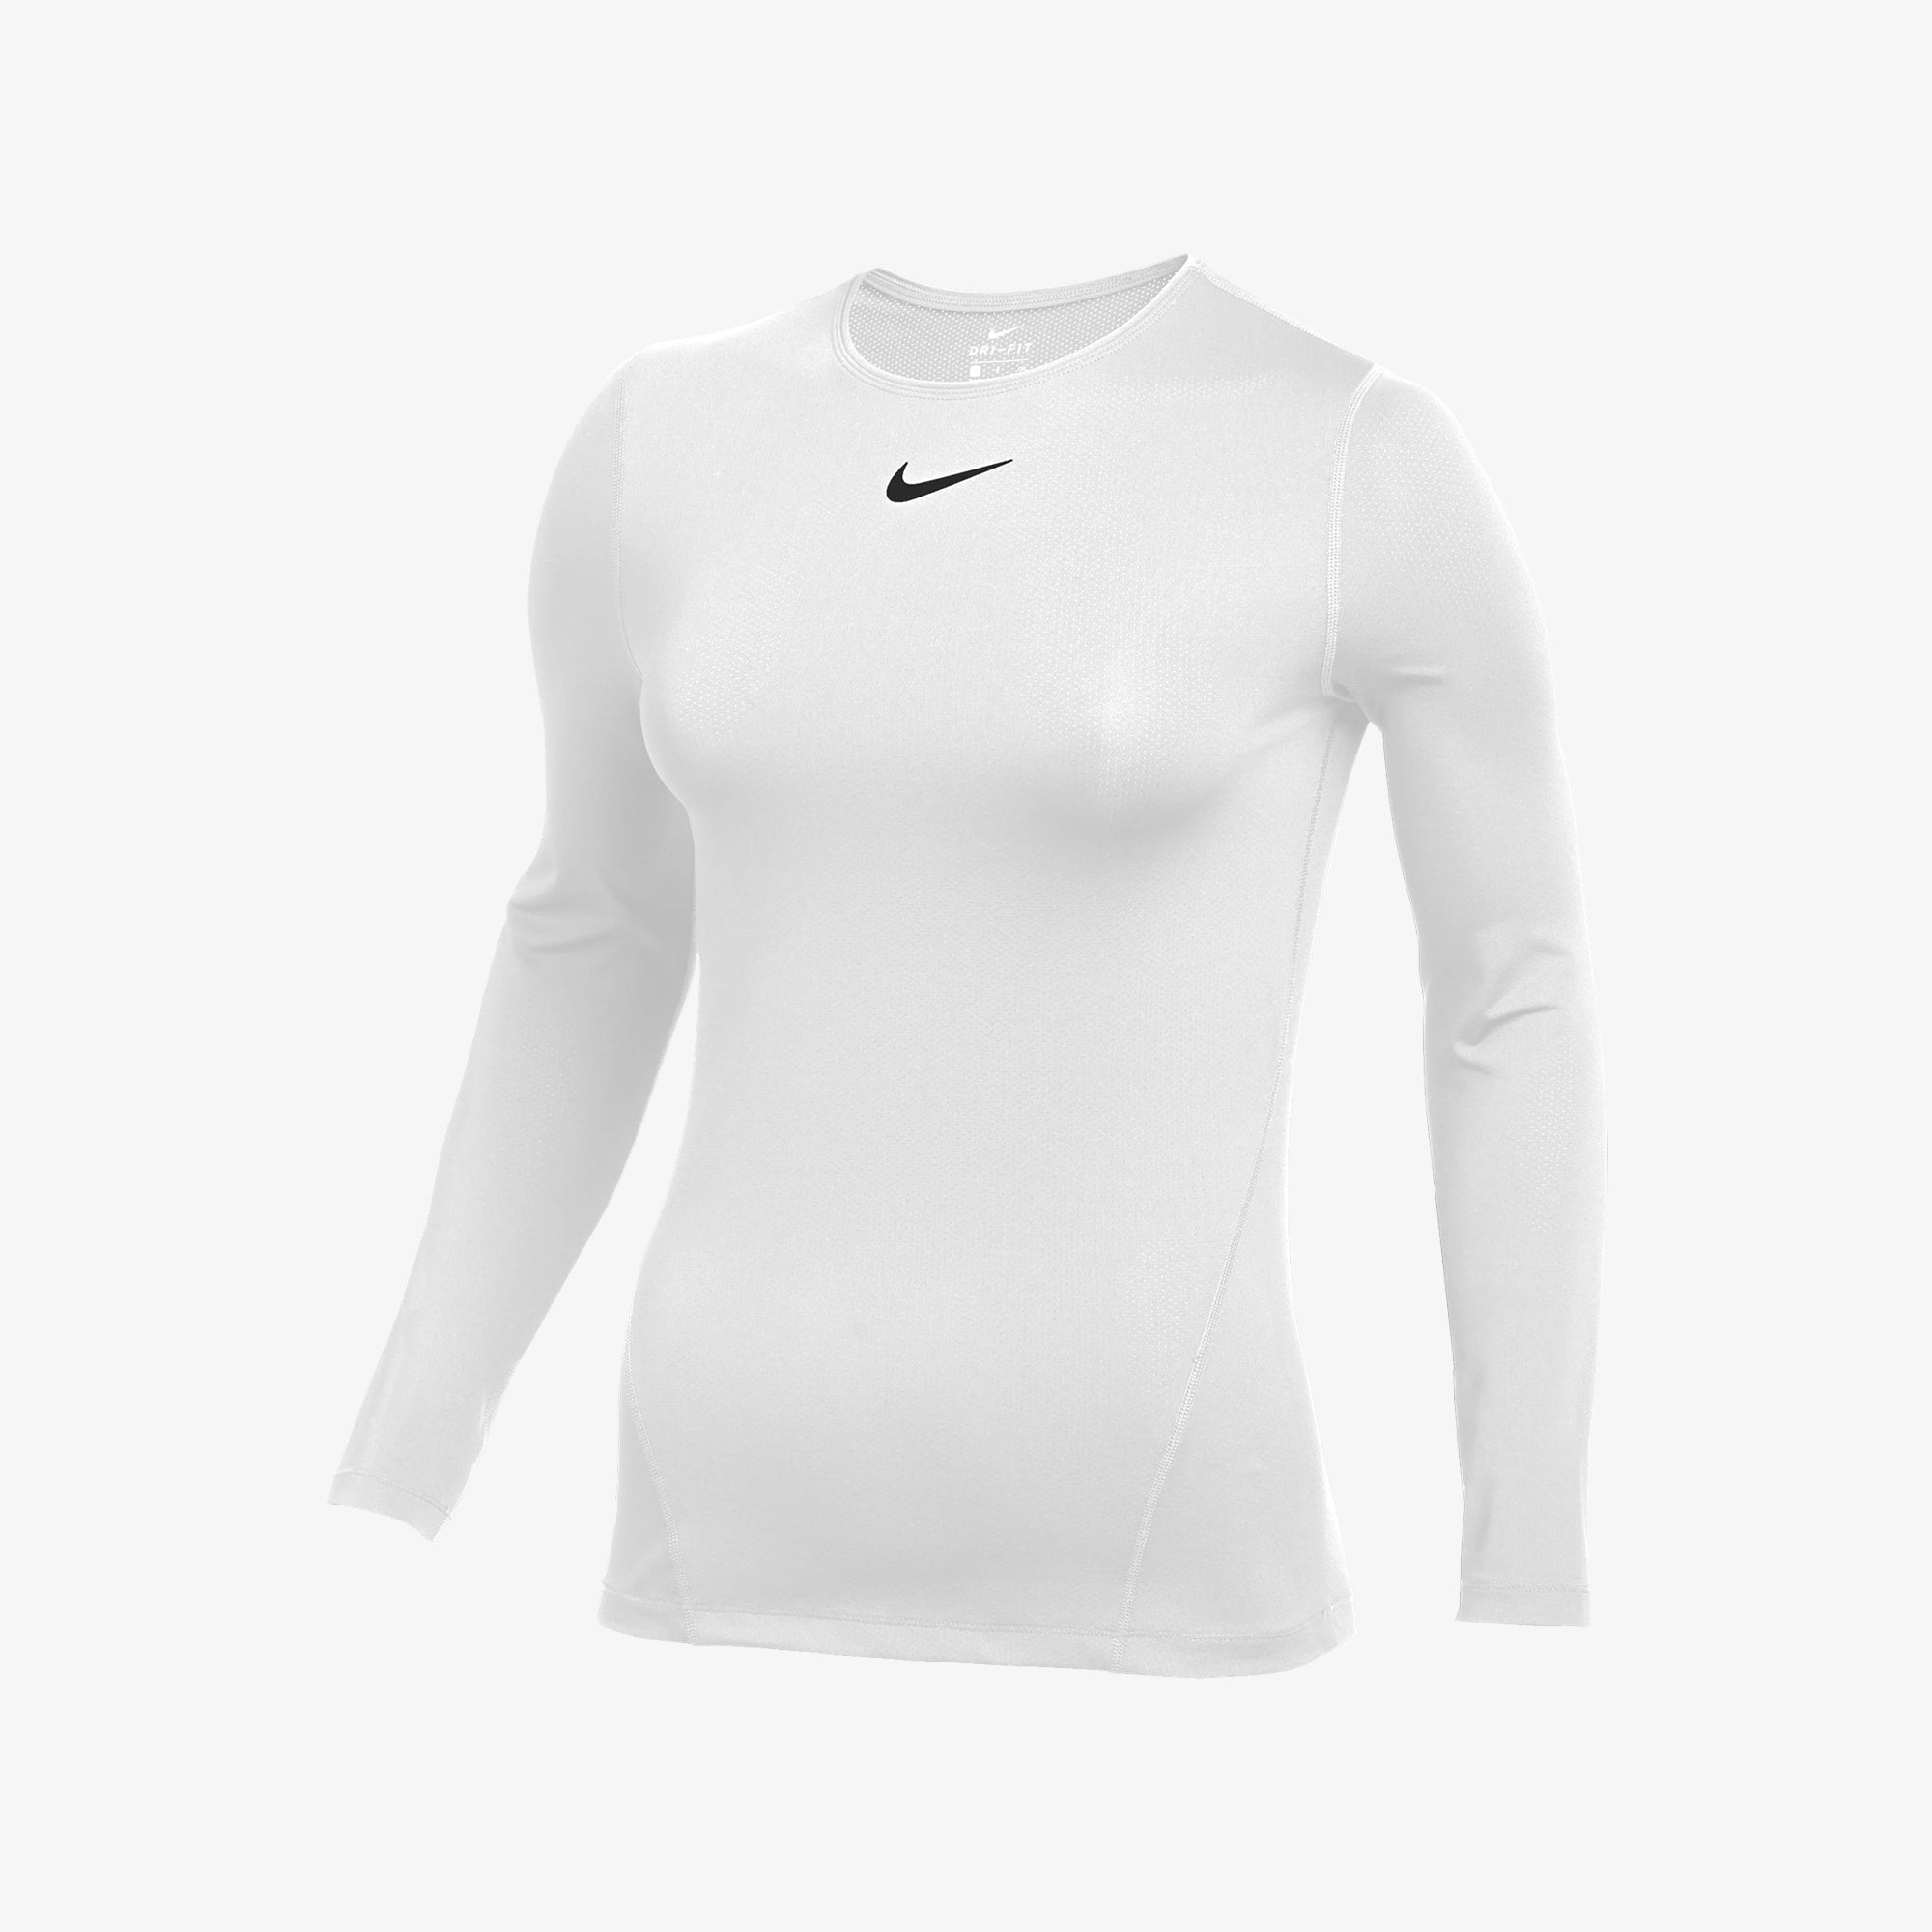 Nike Pro Women’s Long-Sleeve Top